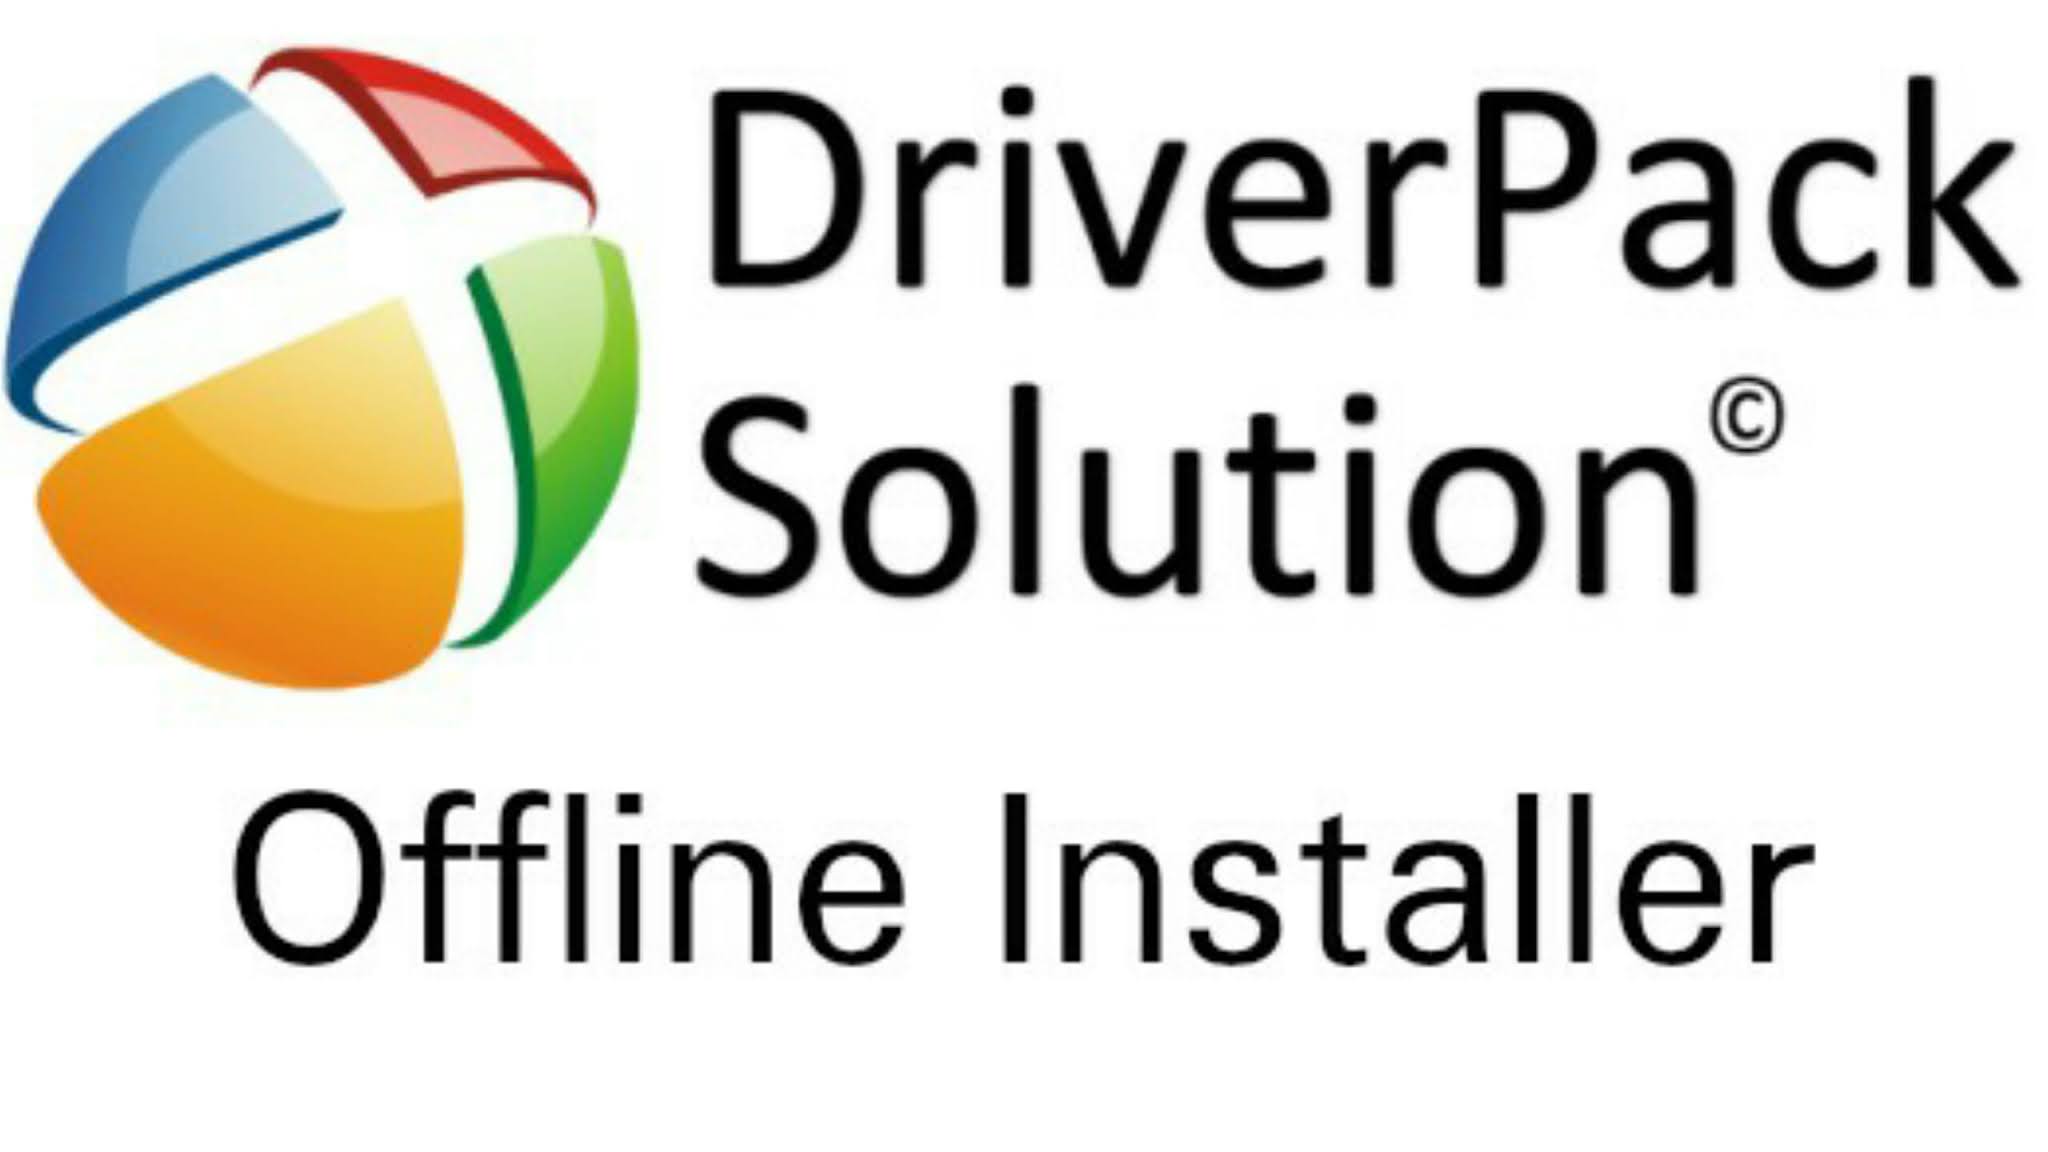 Драйвер пак солюшион. DRIVERPACK. Driver Pack solution. Драйвер пак PNG. Логотип драйвера.